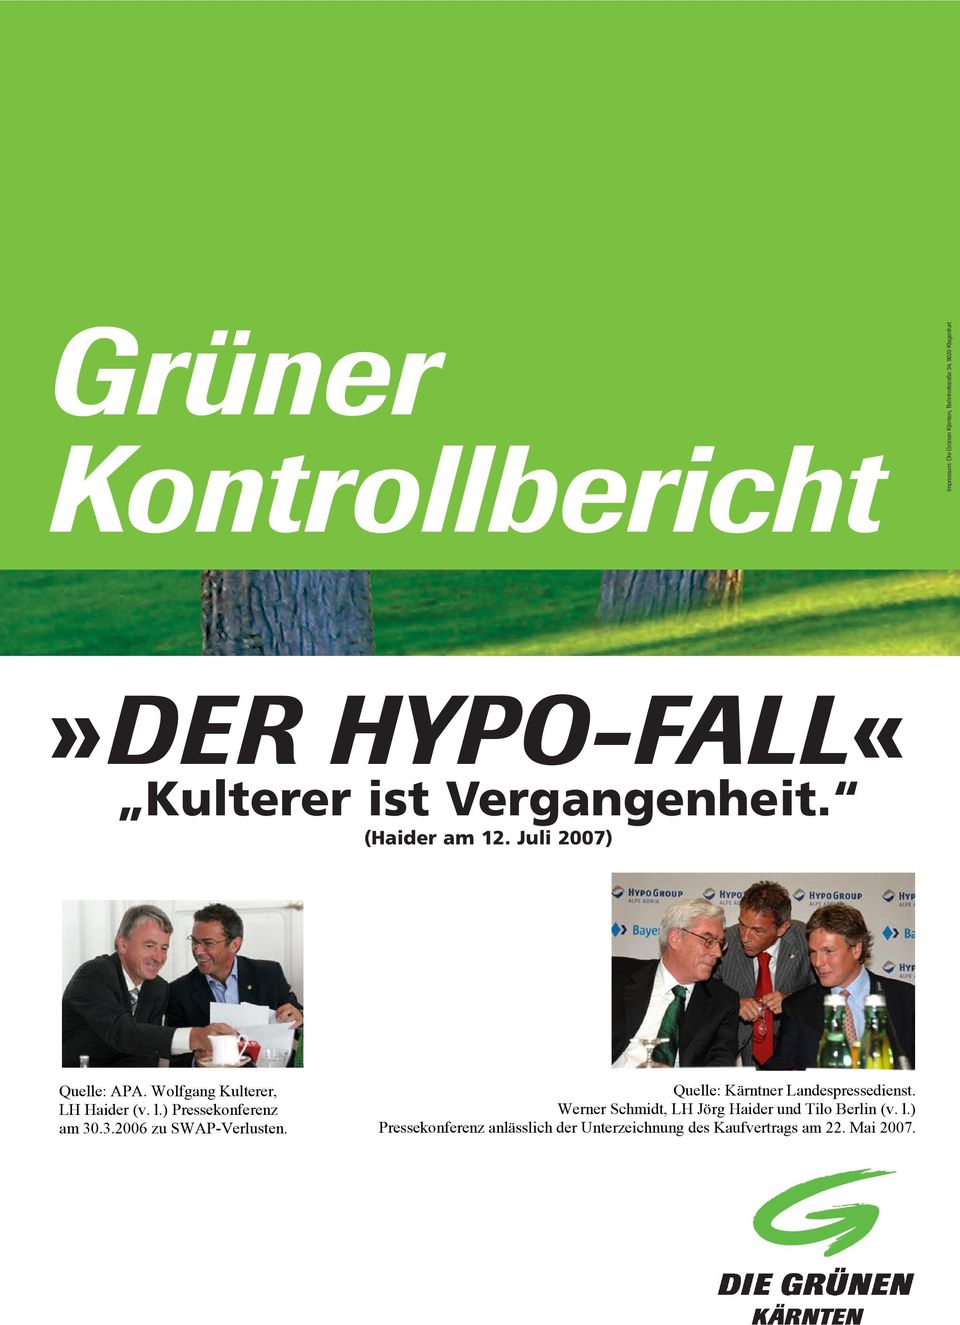 Wolfgang Kulterer, LH Haider (v. l.) Pressekonferenz am 30.3.2006 zu SWAP-Verlusten.